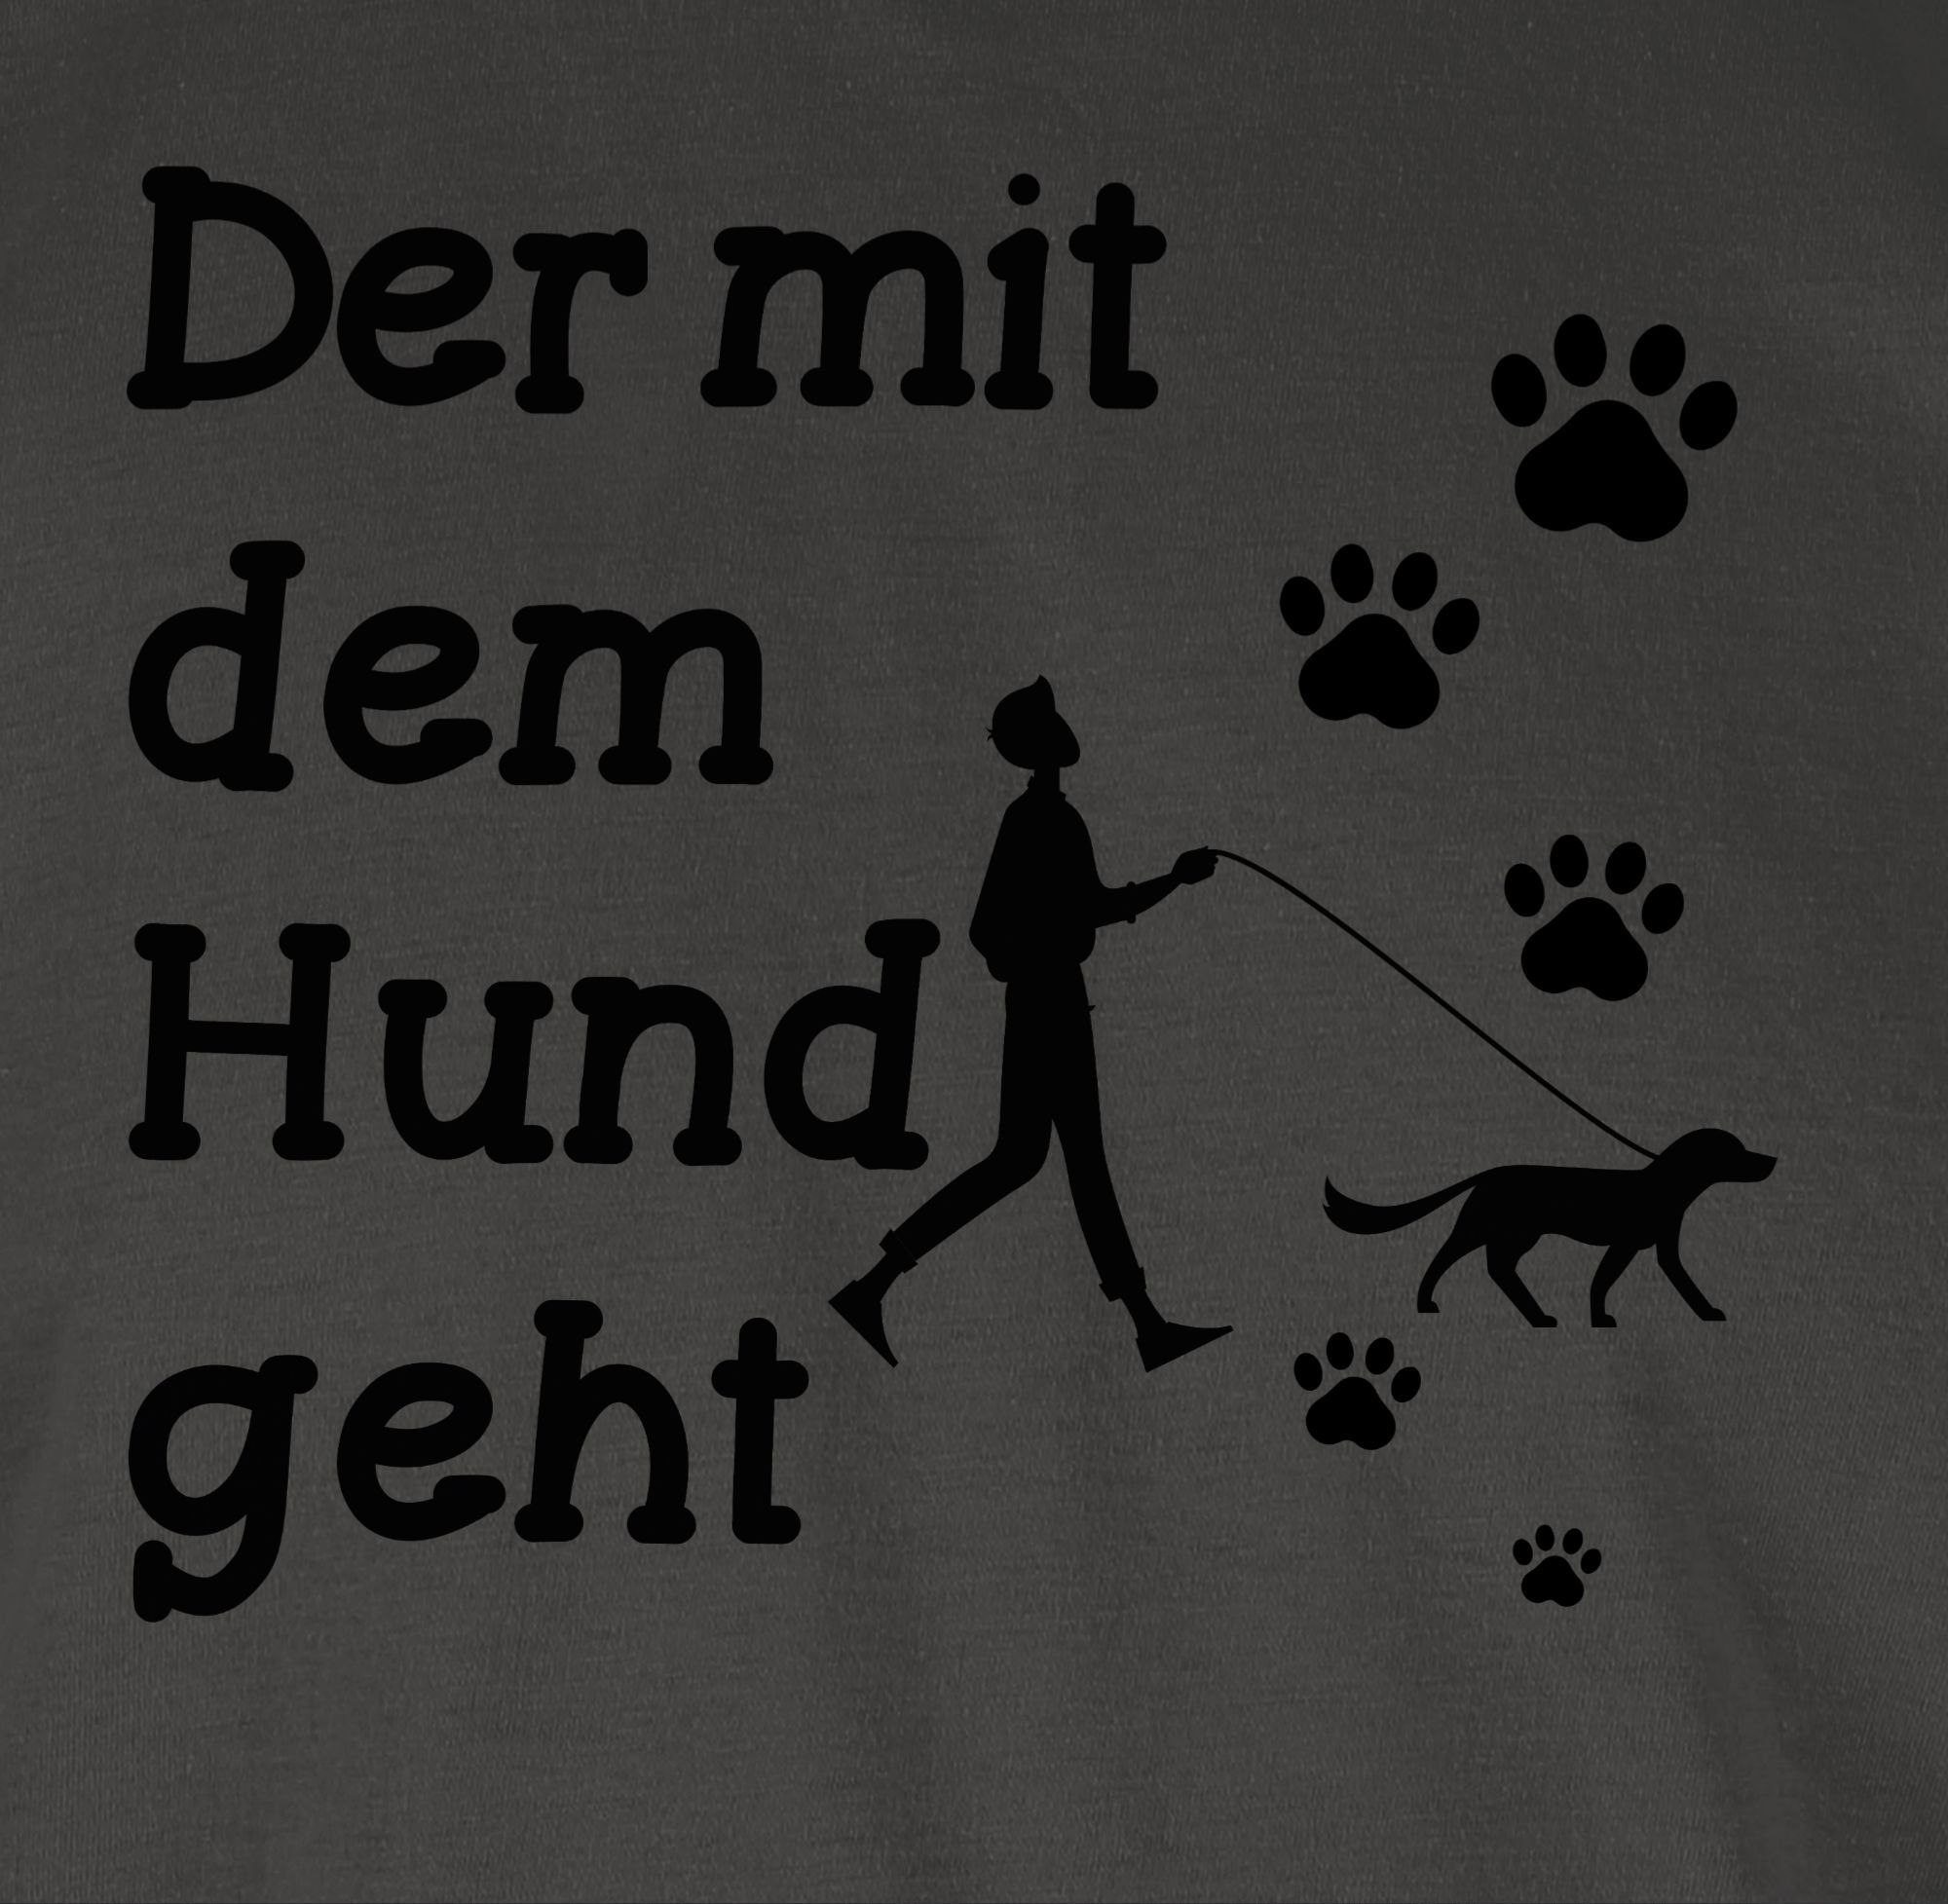 Der T-Shirt Pfoten geht dem Spruch Hund Sprüche mit 01 schwarz Statement mit Shirtracer Dunkelgrau